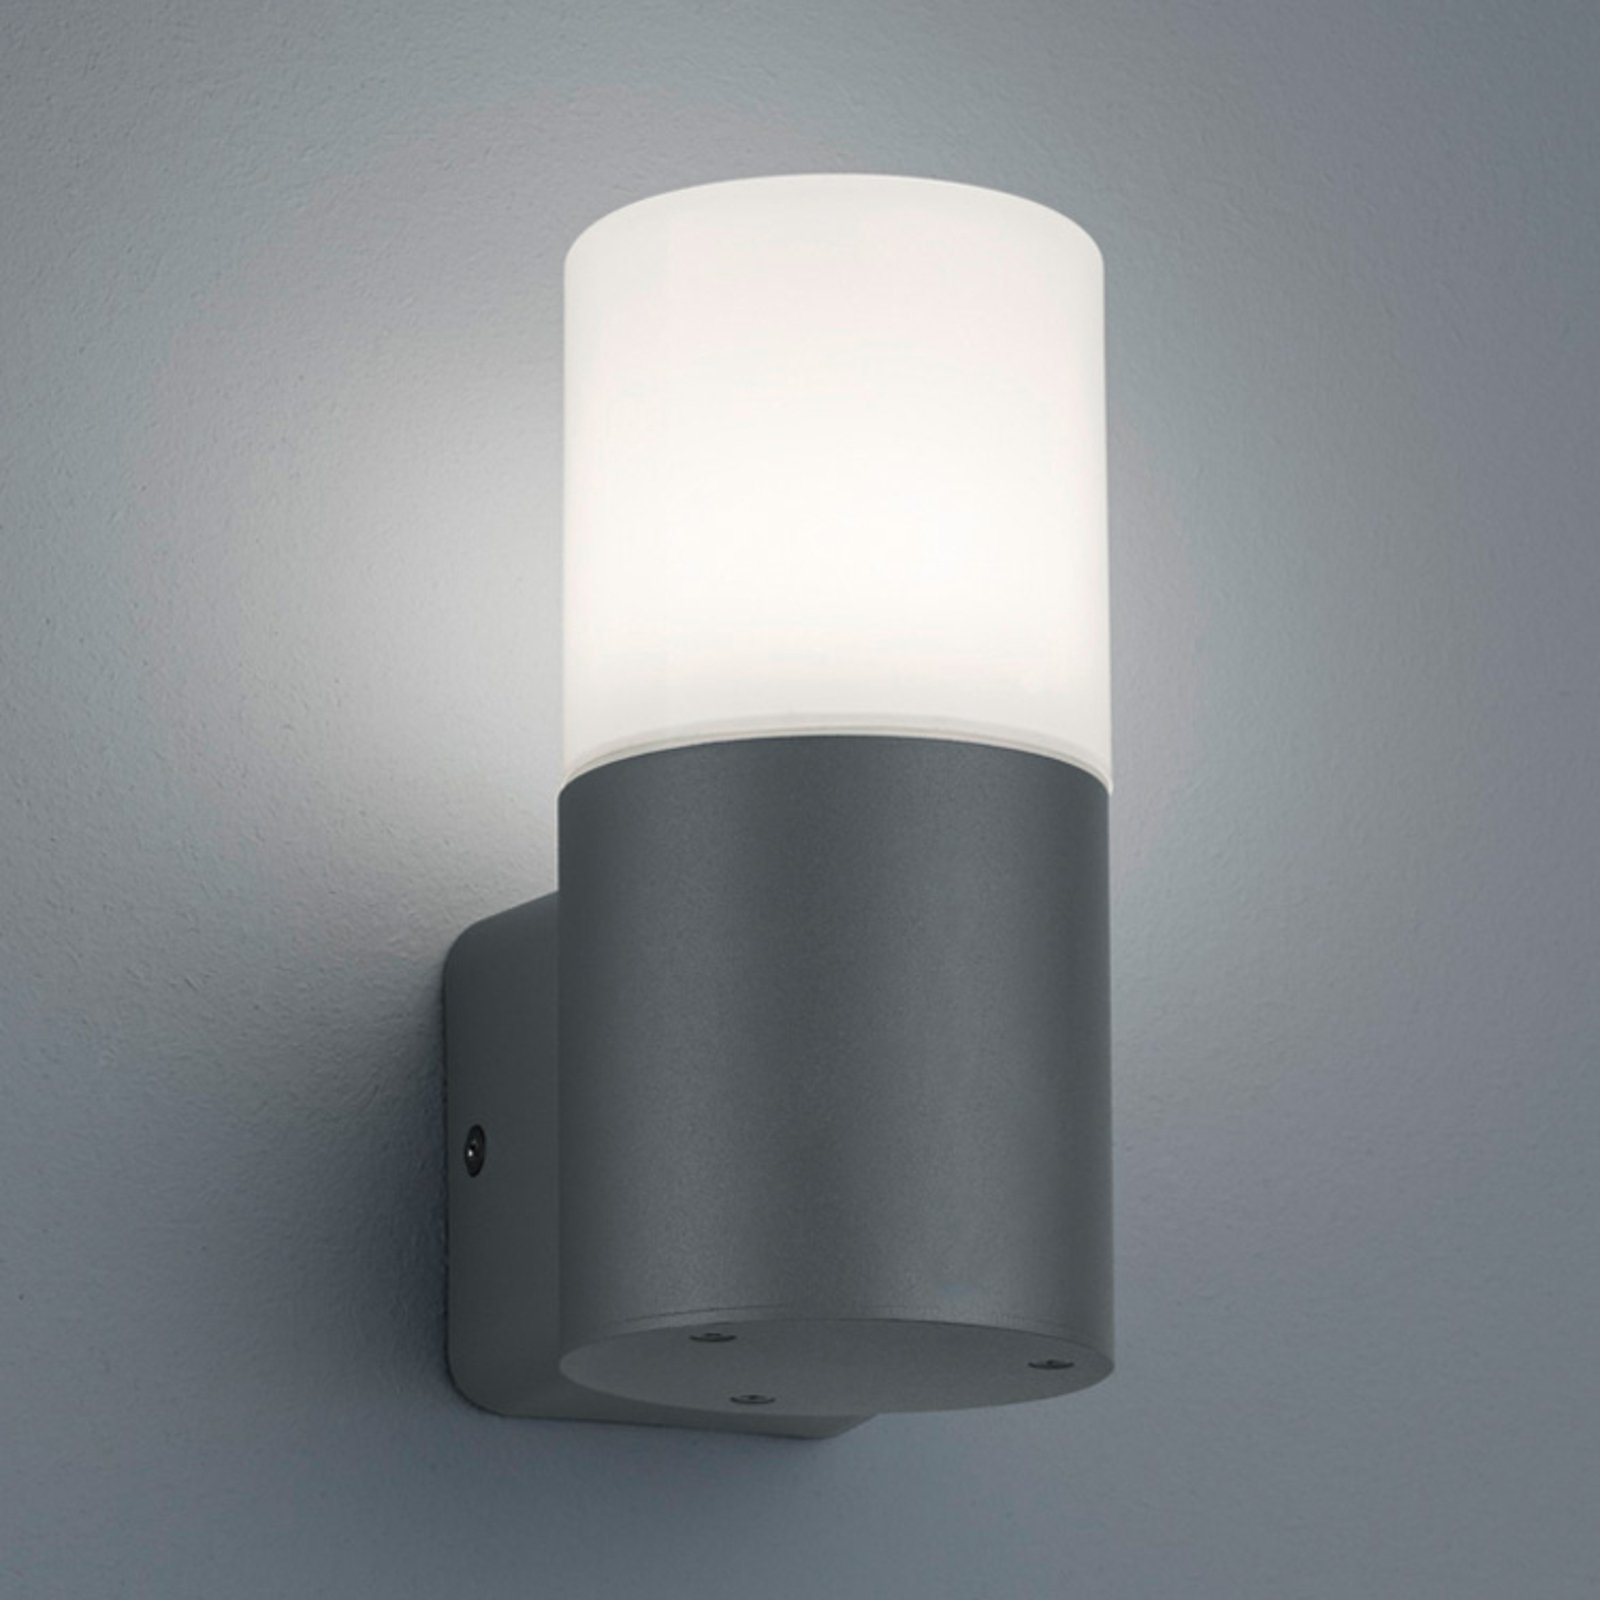 Hoosic vanjska zidna svjetiljka, jedna žarulja, antracit